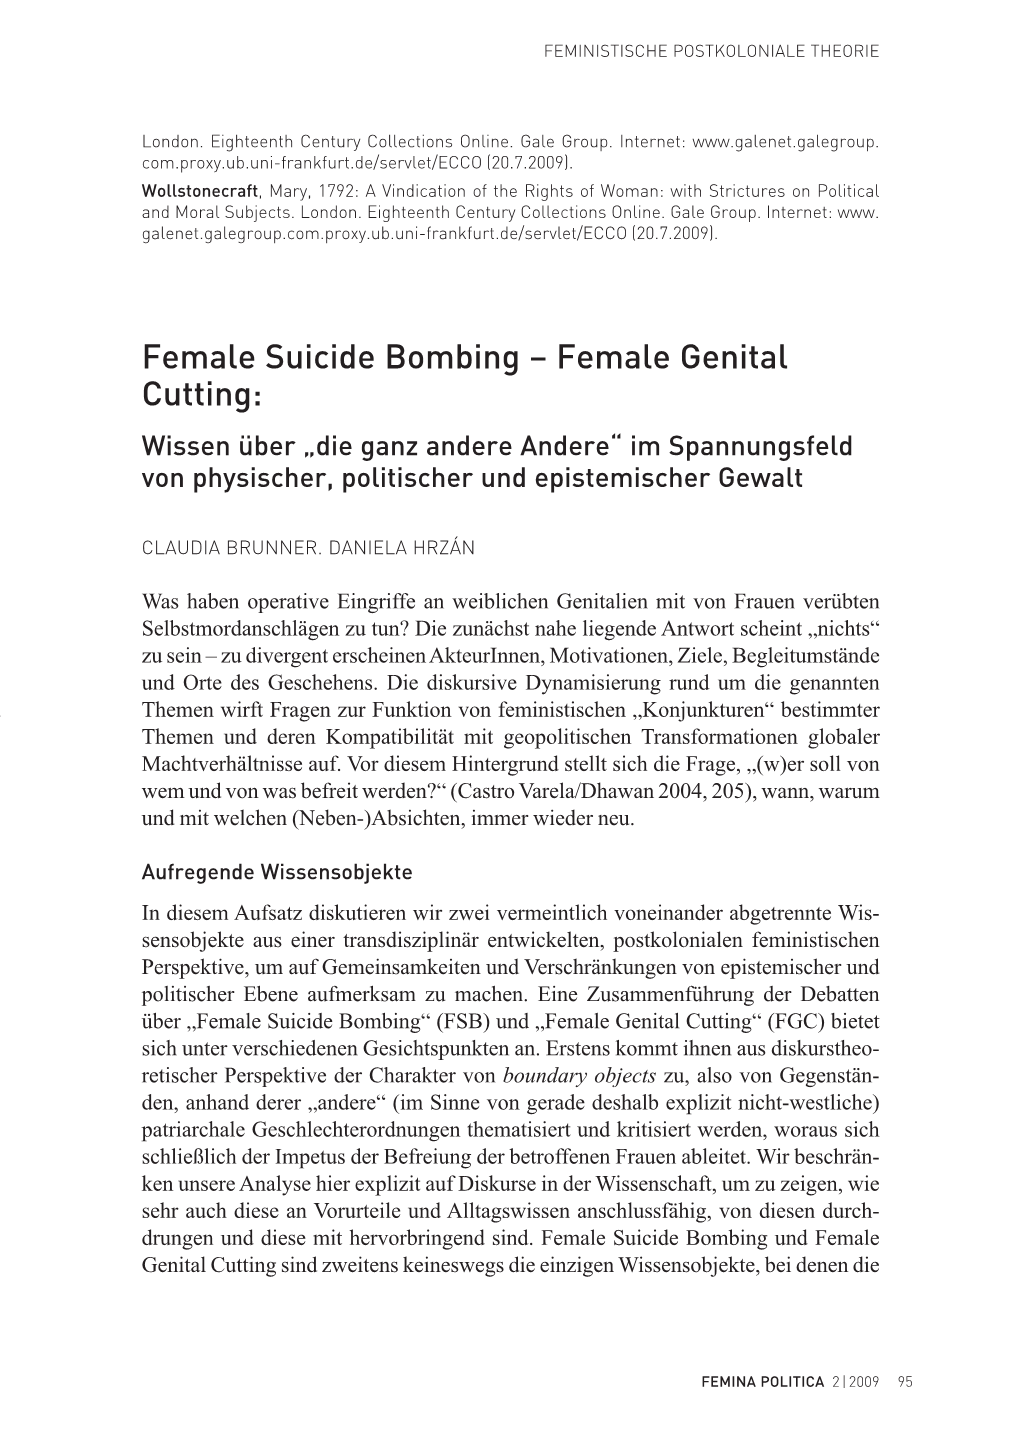 Female Genital Cutting: Wissen Über „Die Ganz Andere Andere“ Im Spannungsfeld Von Physischer, Politischer Und Epistemischer Gewalt